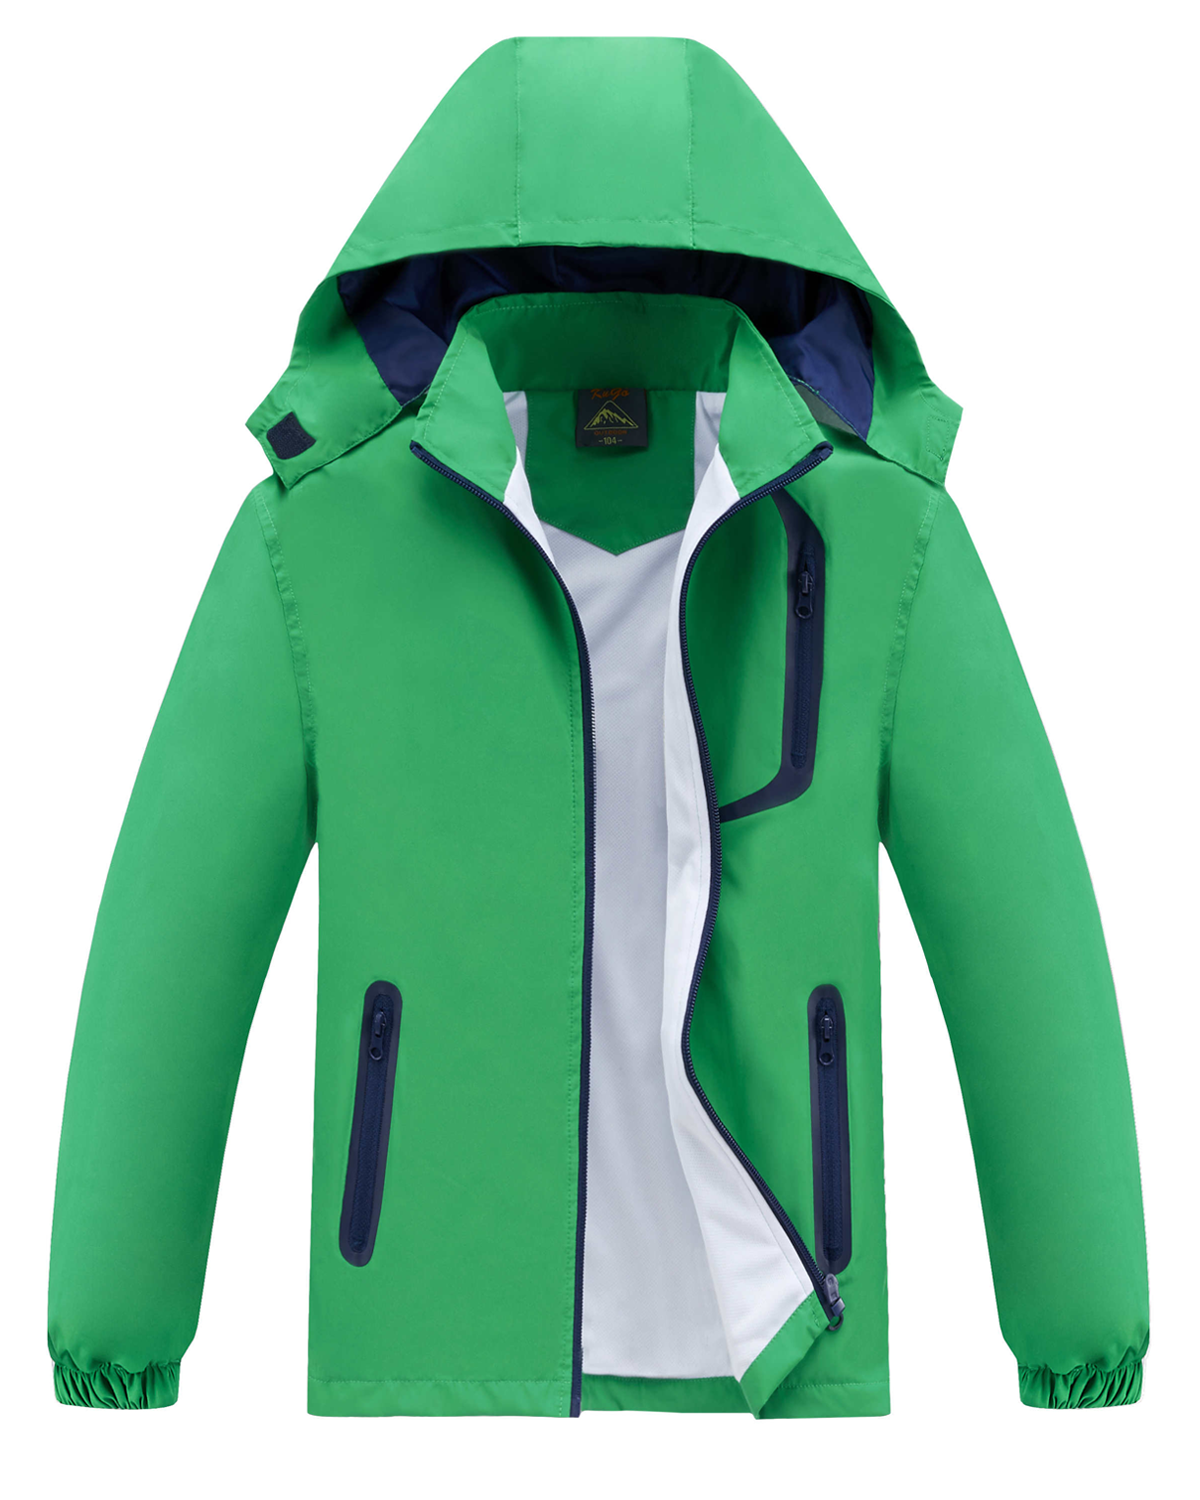 Levně Chlapecká jarní, podzimní bunda - KUGO B2868, zelená Barva: Zelená